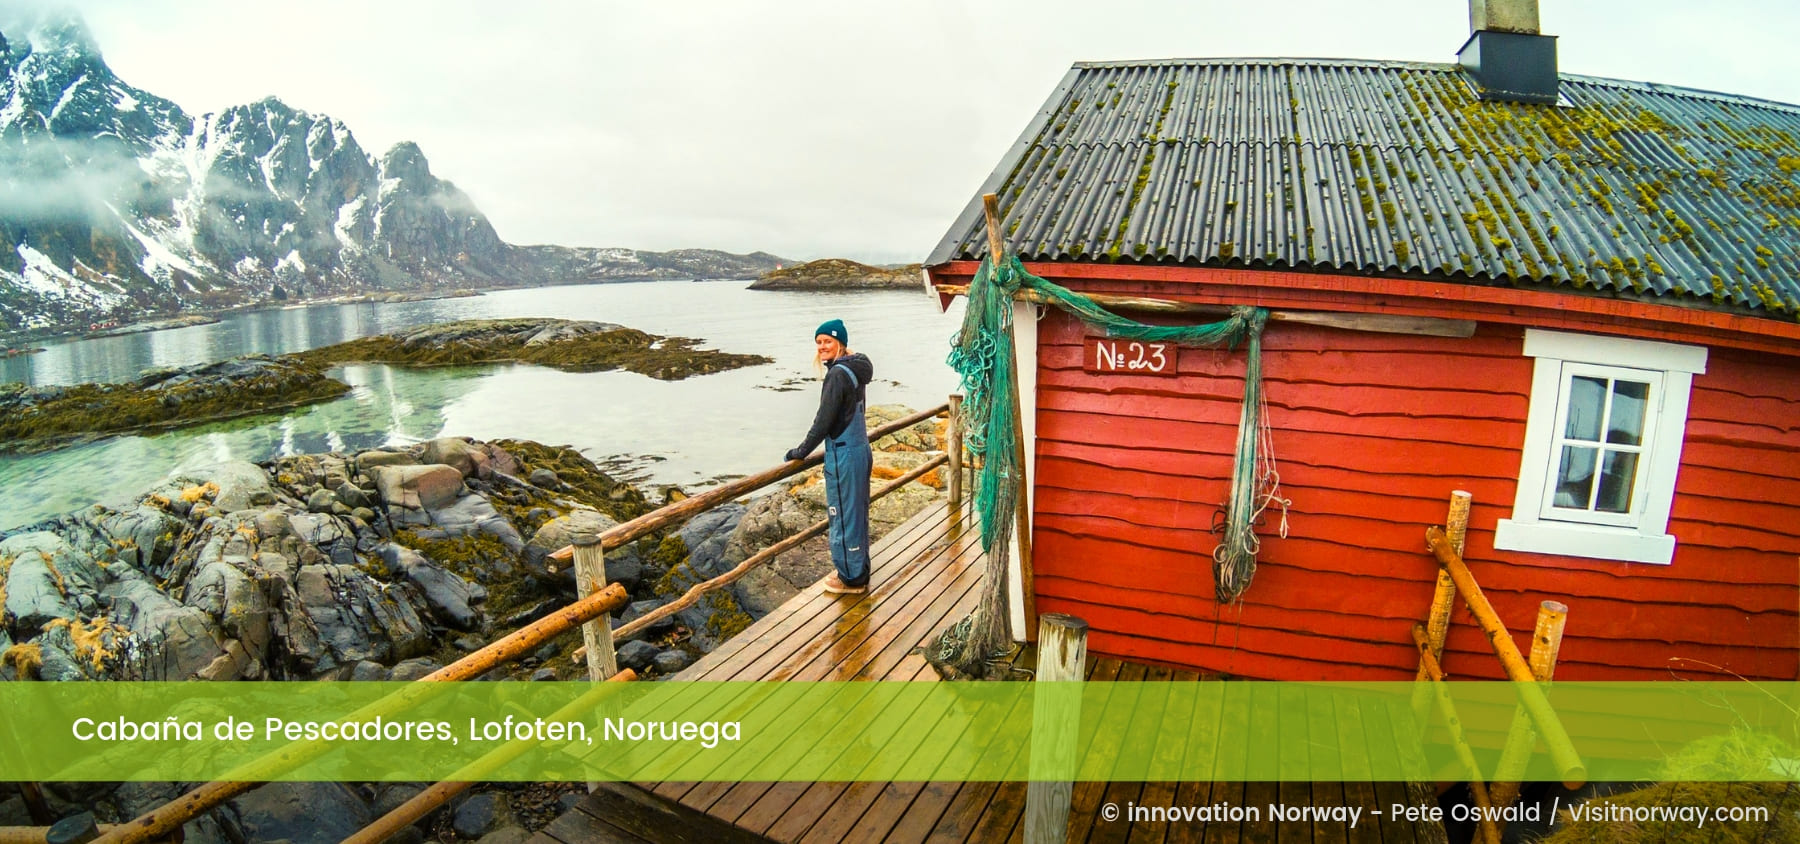 Cabaña de Pescadores, Lofoten, Noruega